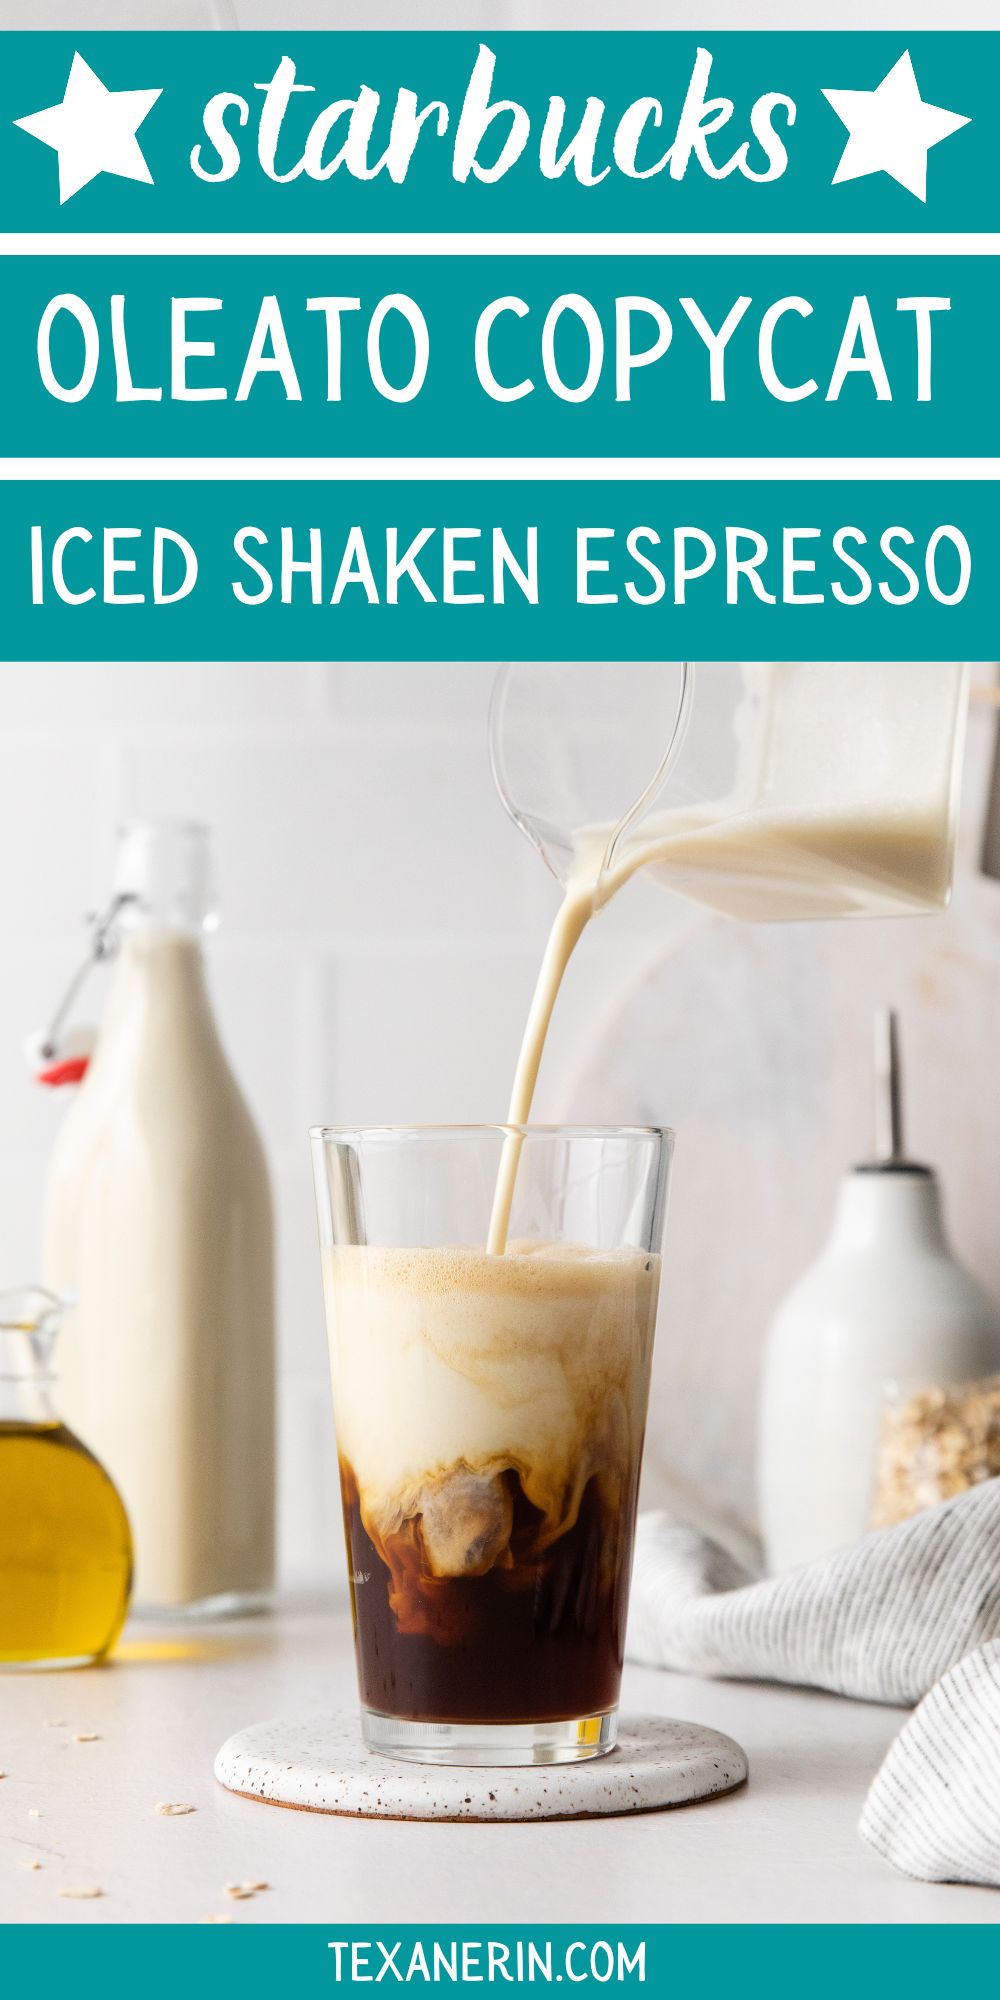 https://www.texanerin.com/content/uploads/2023/03/starbucks-oleato-copycat-iced-shaken-espresso-image-pin.jpg